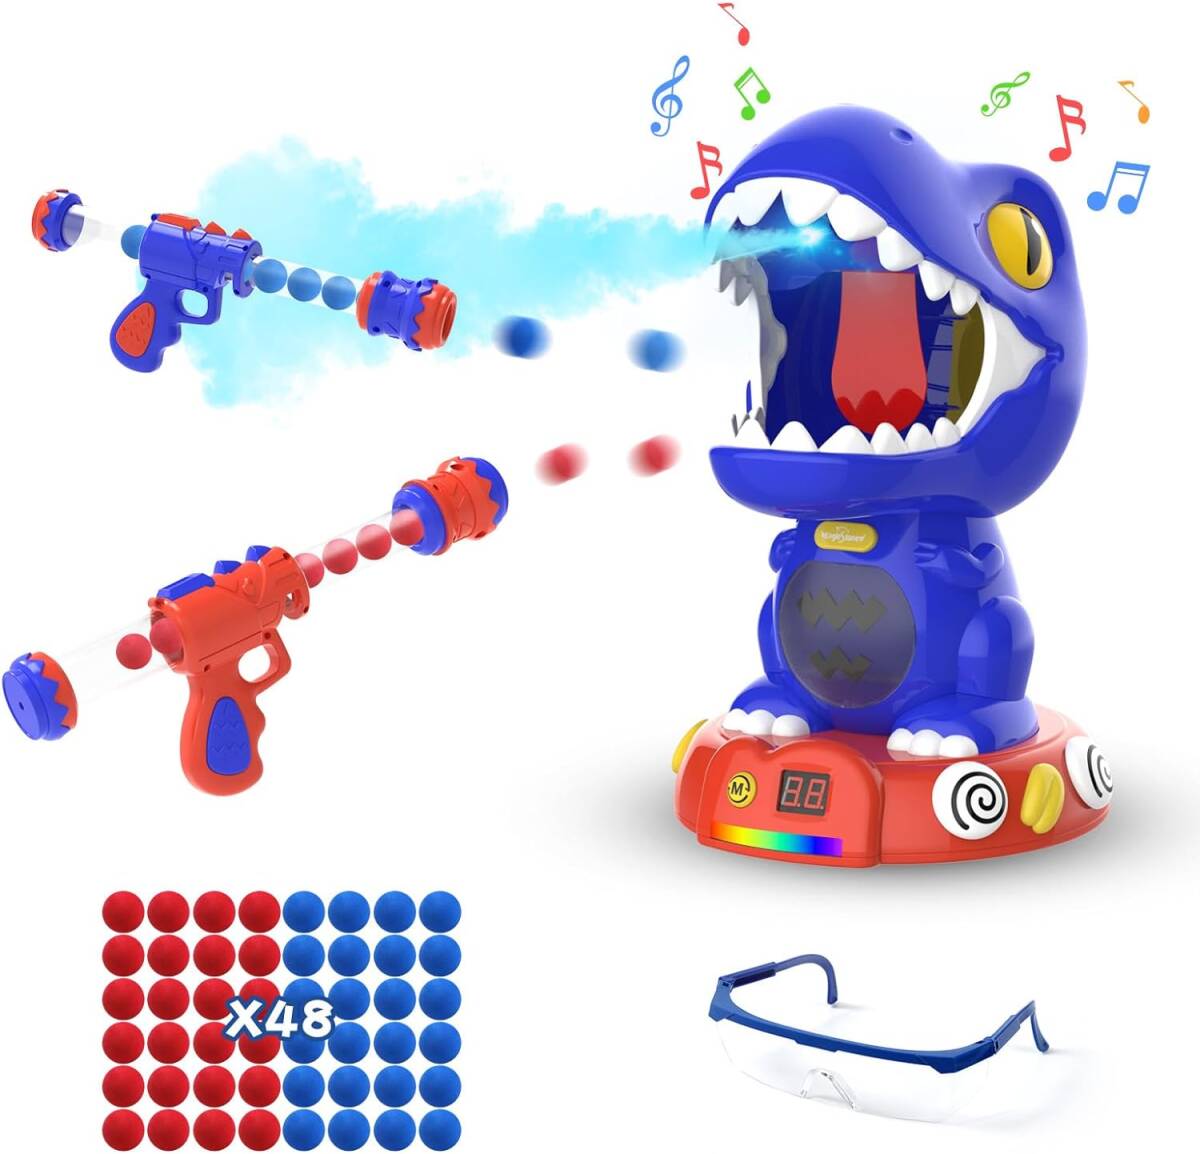 ブルー おもちゃ 的あて 男の子 恐竜 ポッパーガン シューティング EagleStone 室内ゲーム 移動射撃ターゲット 噴霧